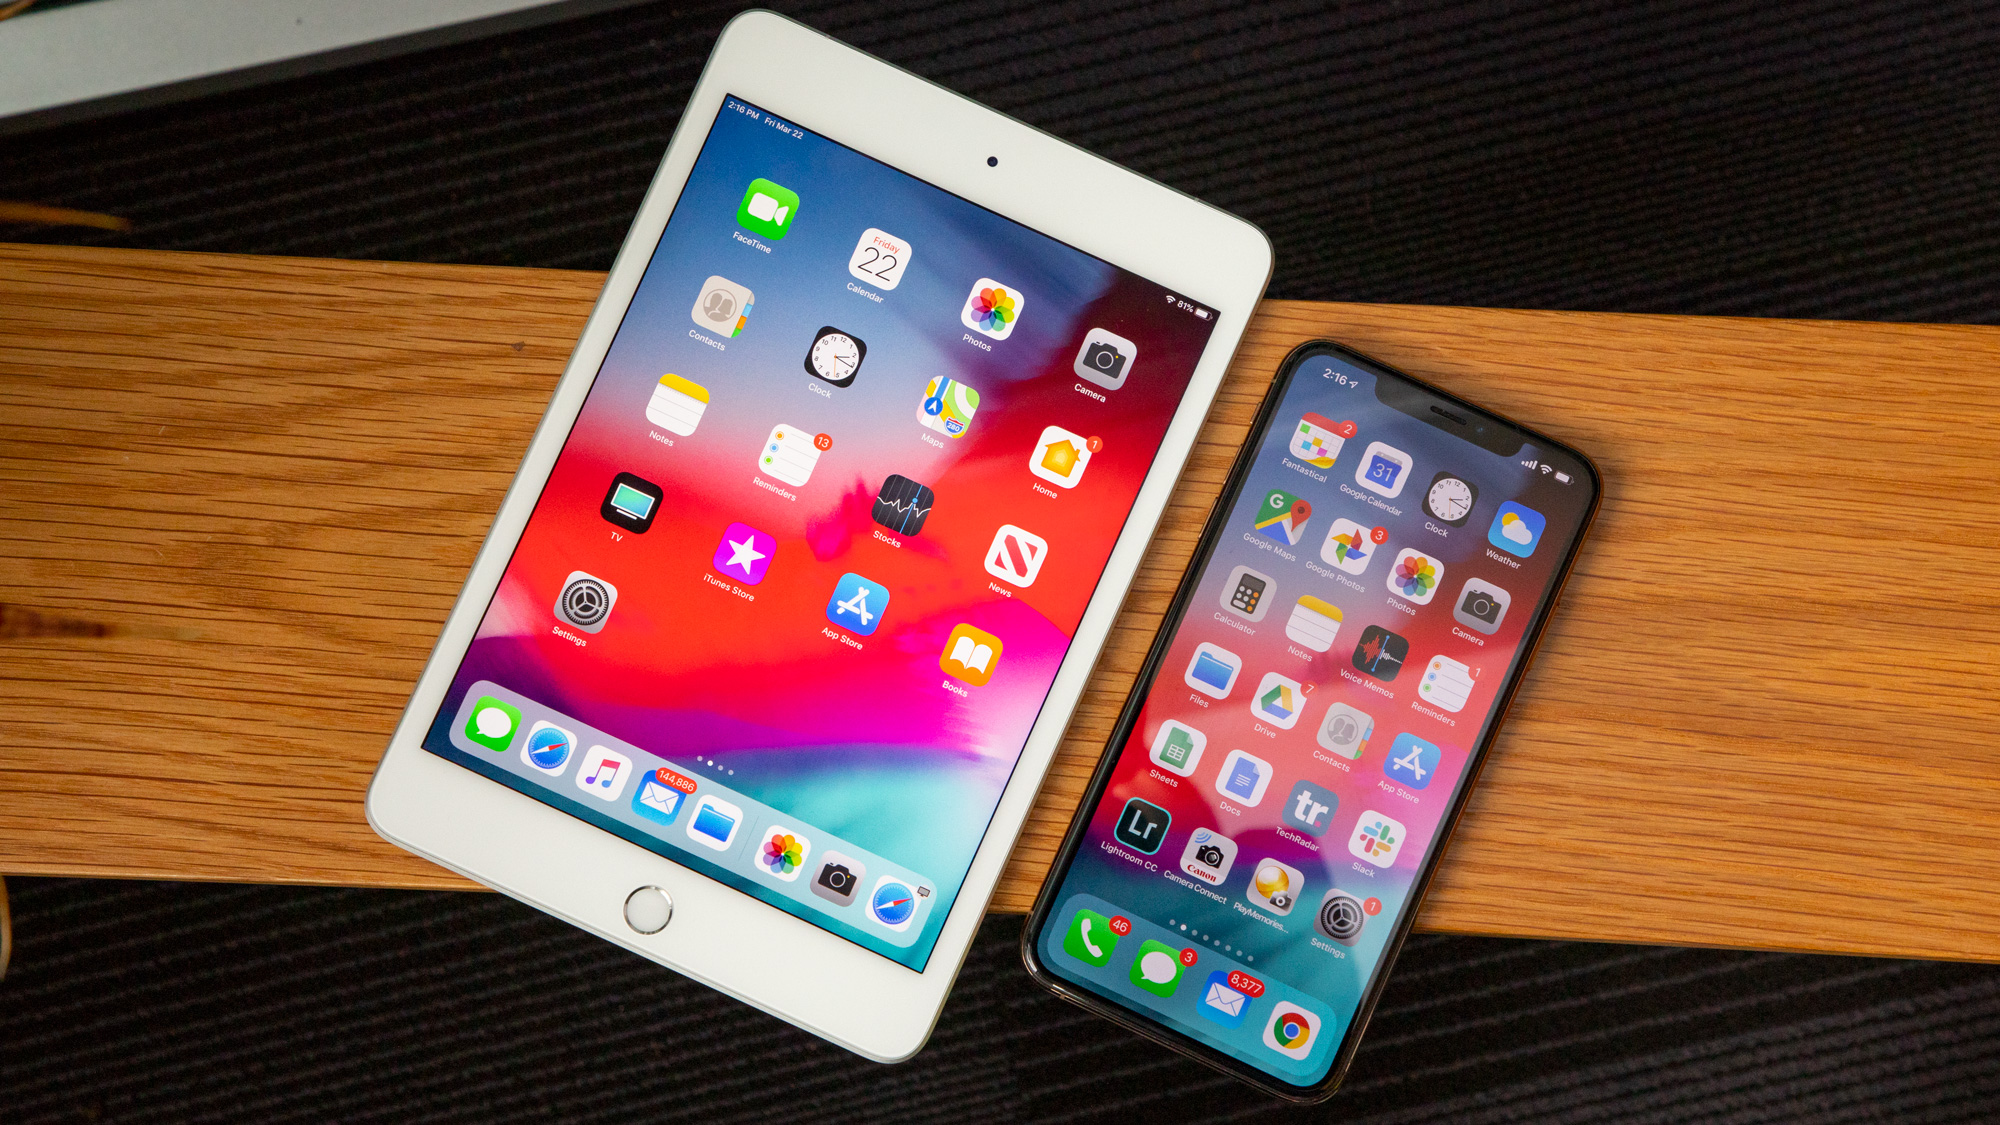 The iPad mini 5 next to an iPhone